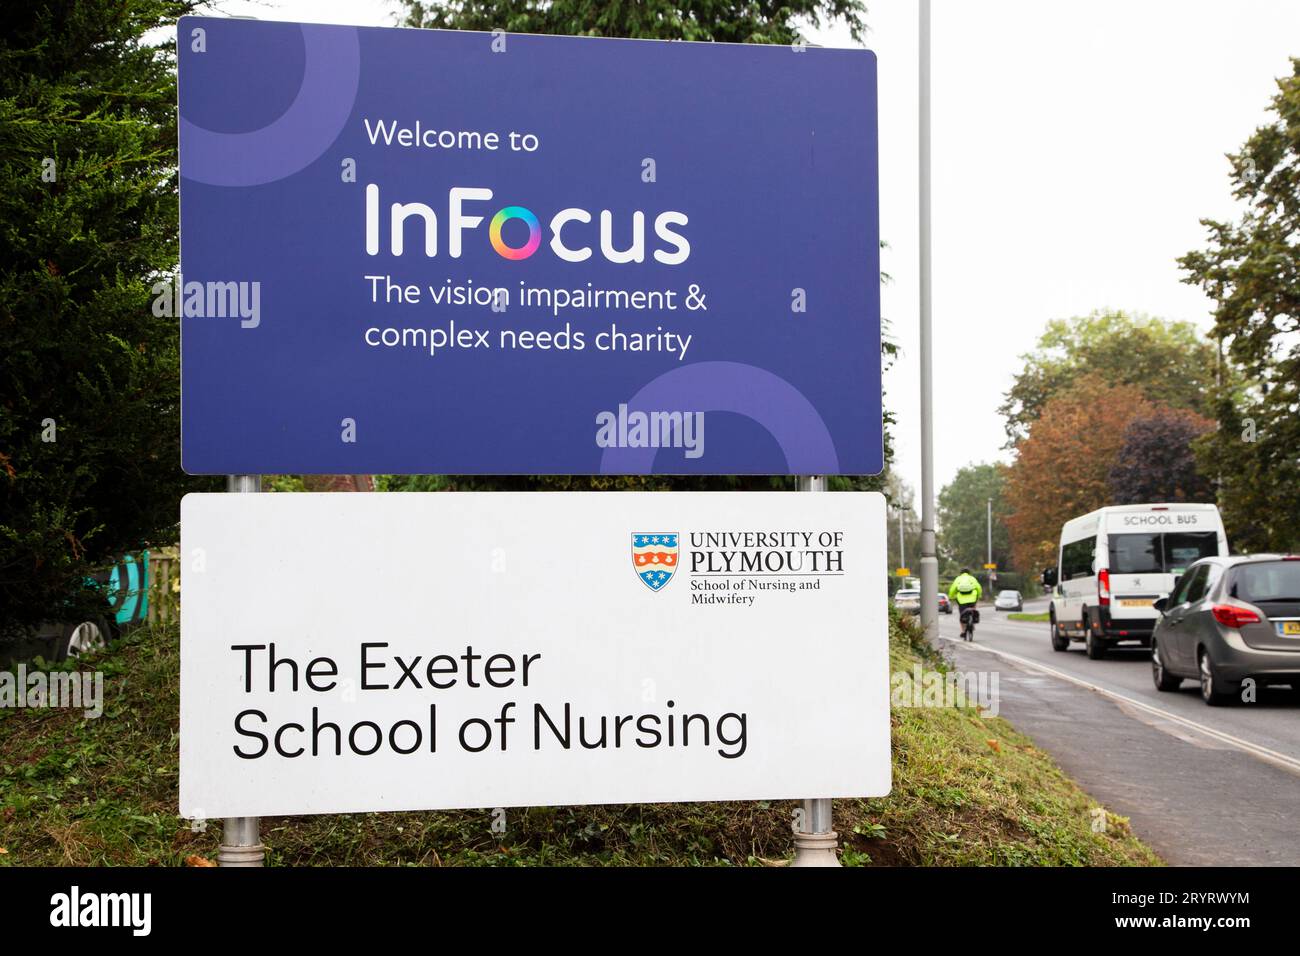 Die Exeter Schule für Krankenpflege Zeichen mit im Fokus Vision Wohltätigkeitszeichen Stockfoto